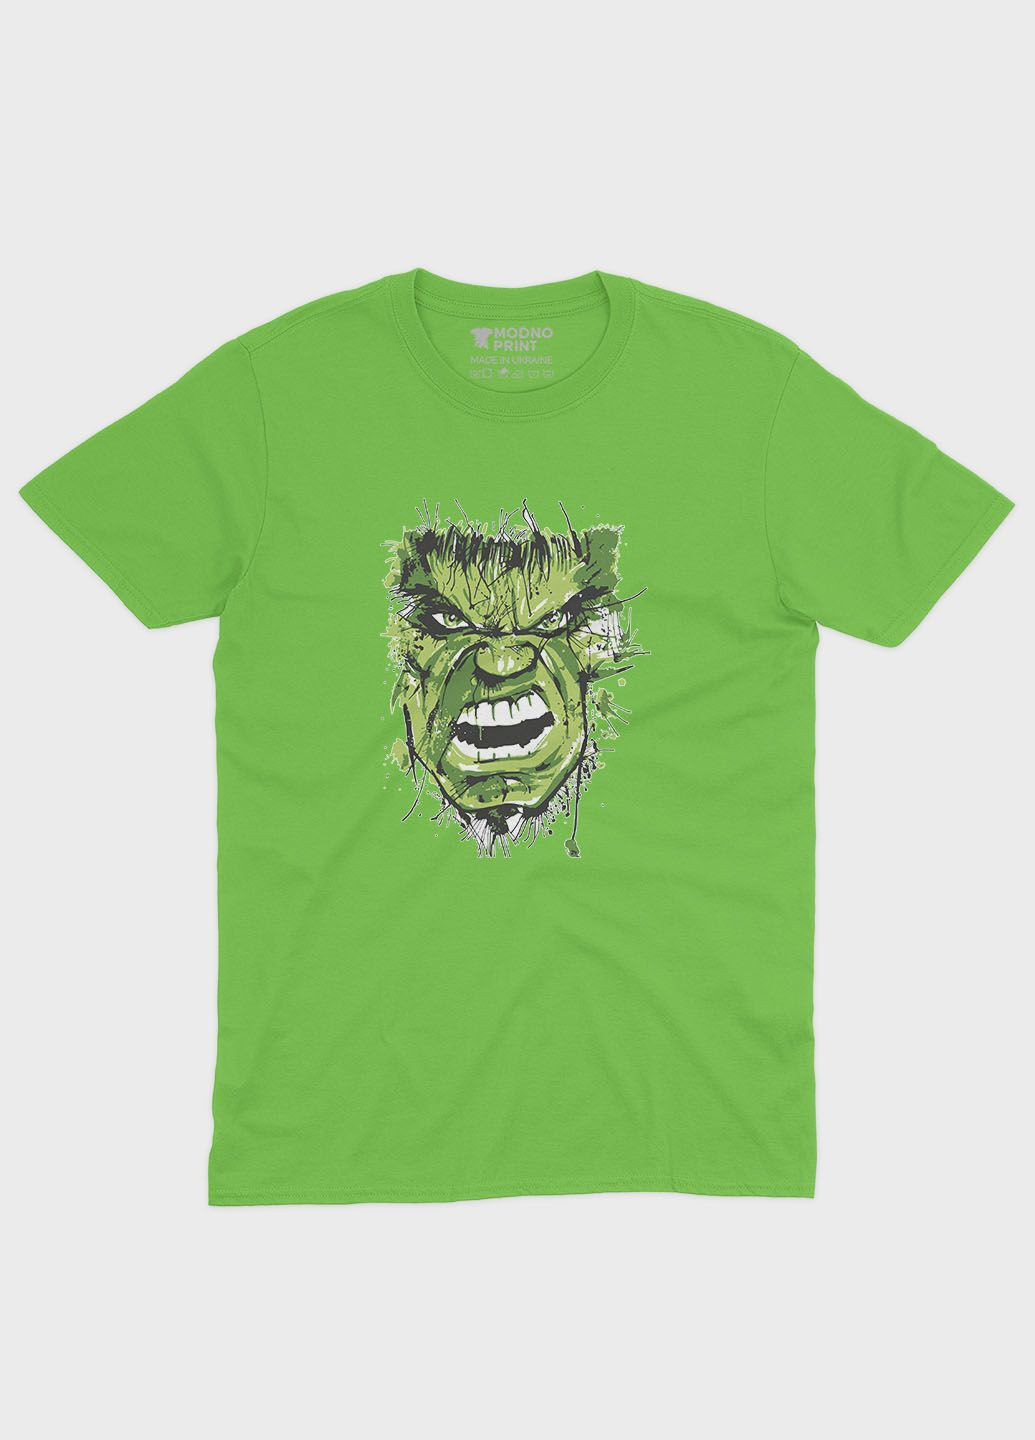 Салатова демісезонна футболка для хлопчика з принтом супергероя - халк (ts001-1-kiw-006-018-012-b) Modno